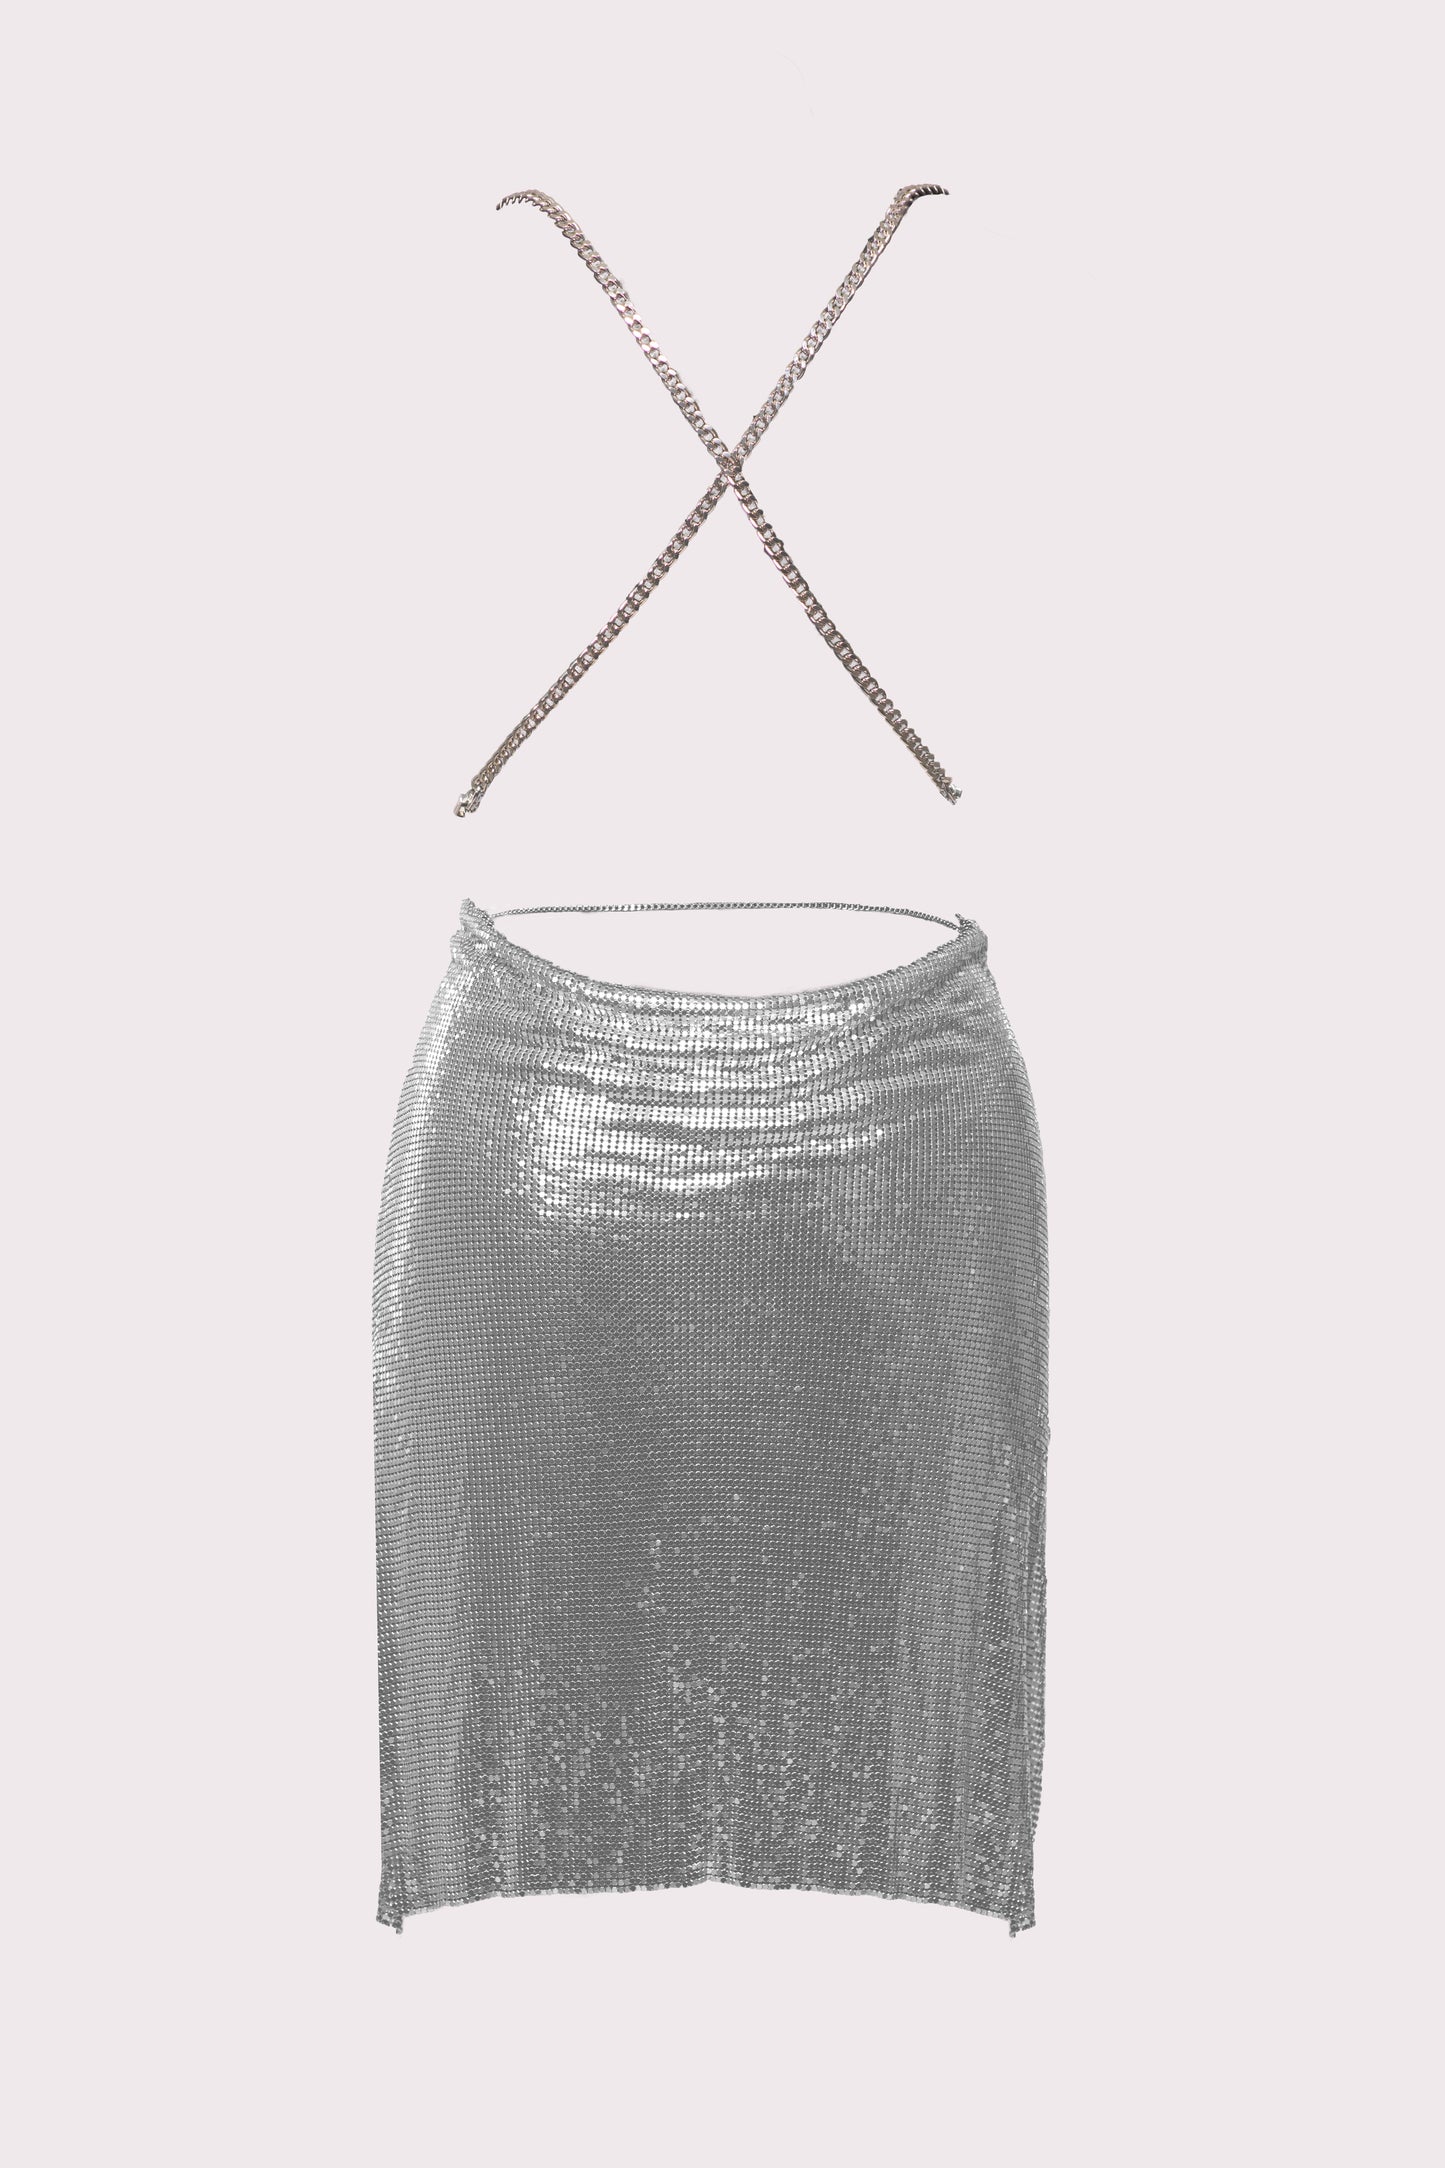 The Kunzite Silver Dress